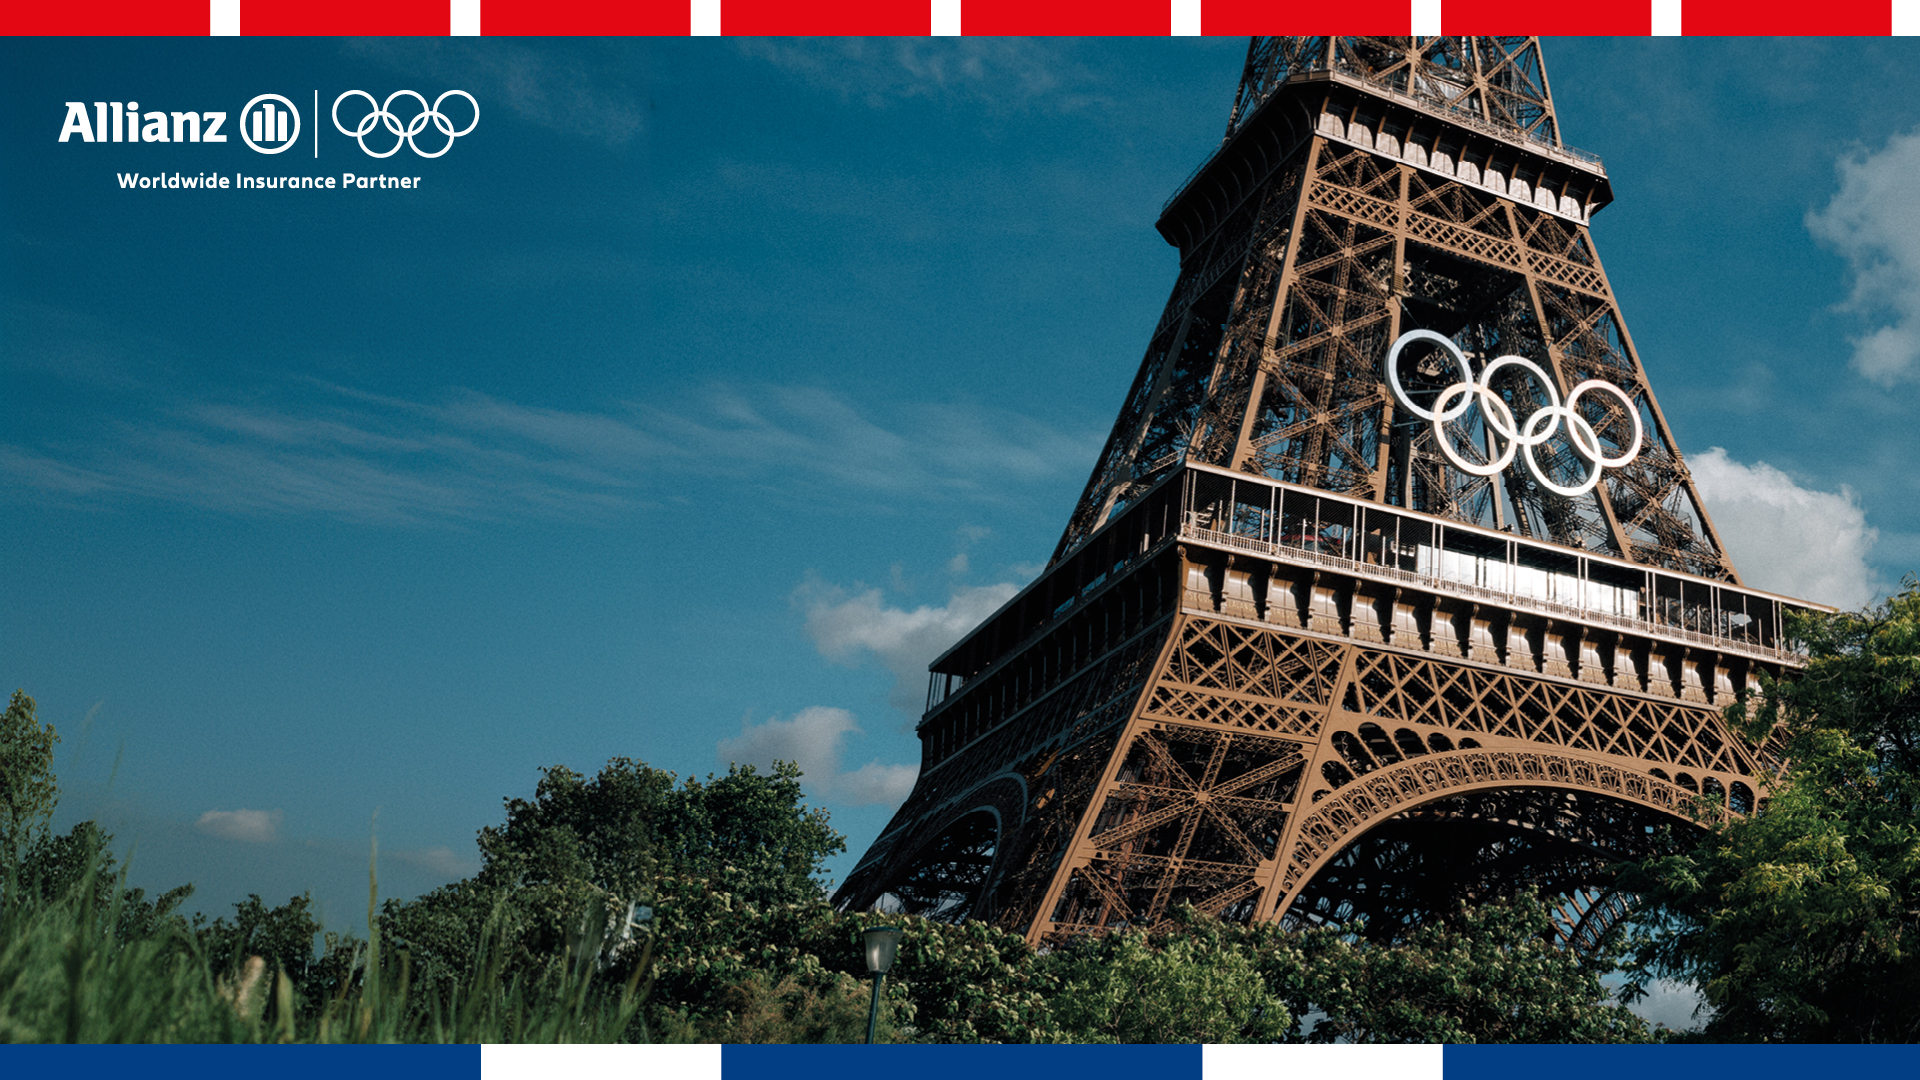 Juegos Olimpicos y Paralimpicos Paris 2024